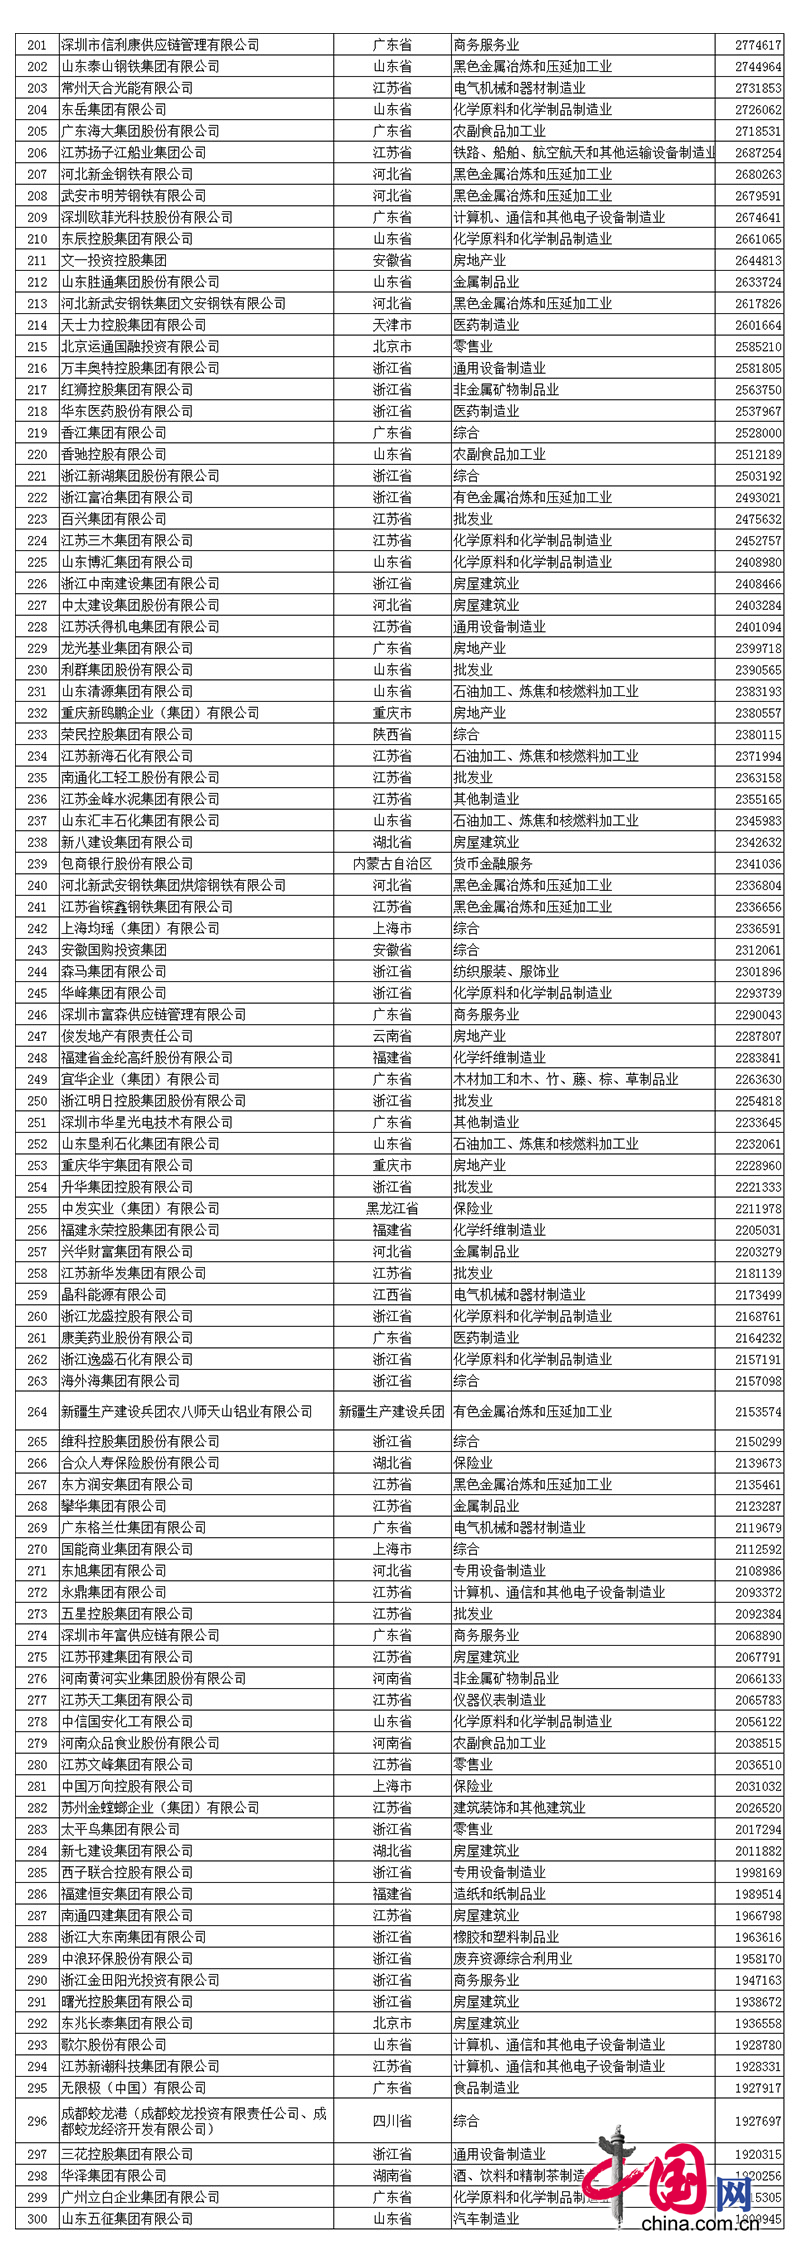 2017中国民营企业500强名单中918博天堂排名第390名